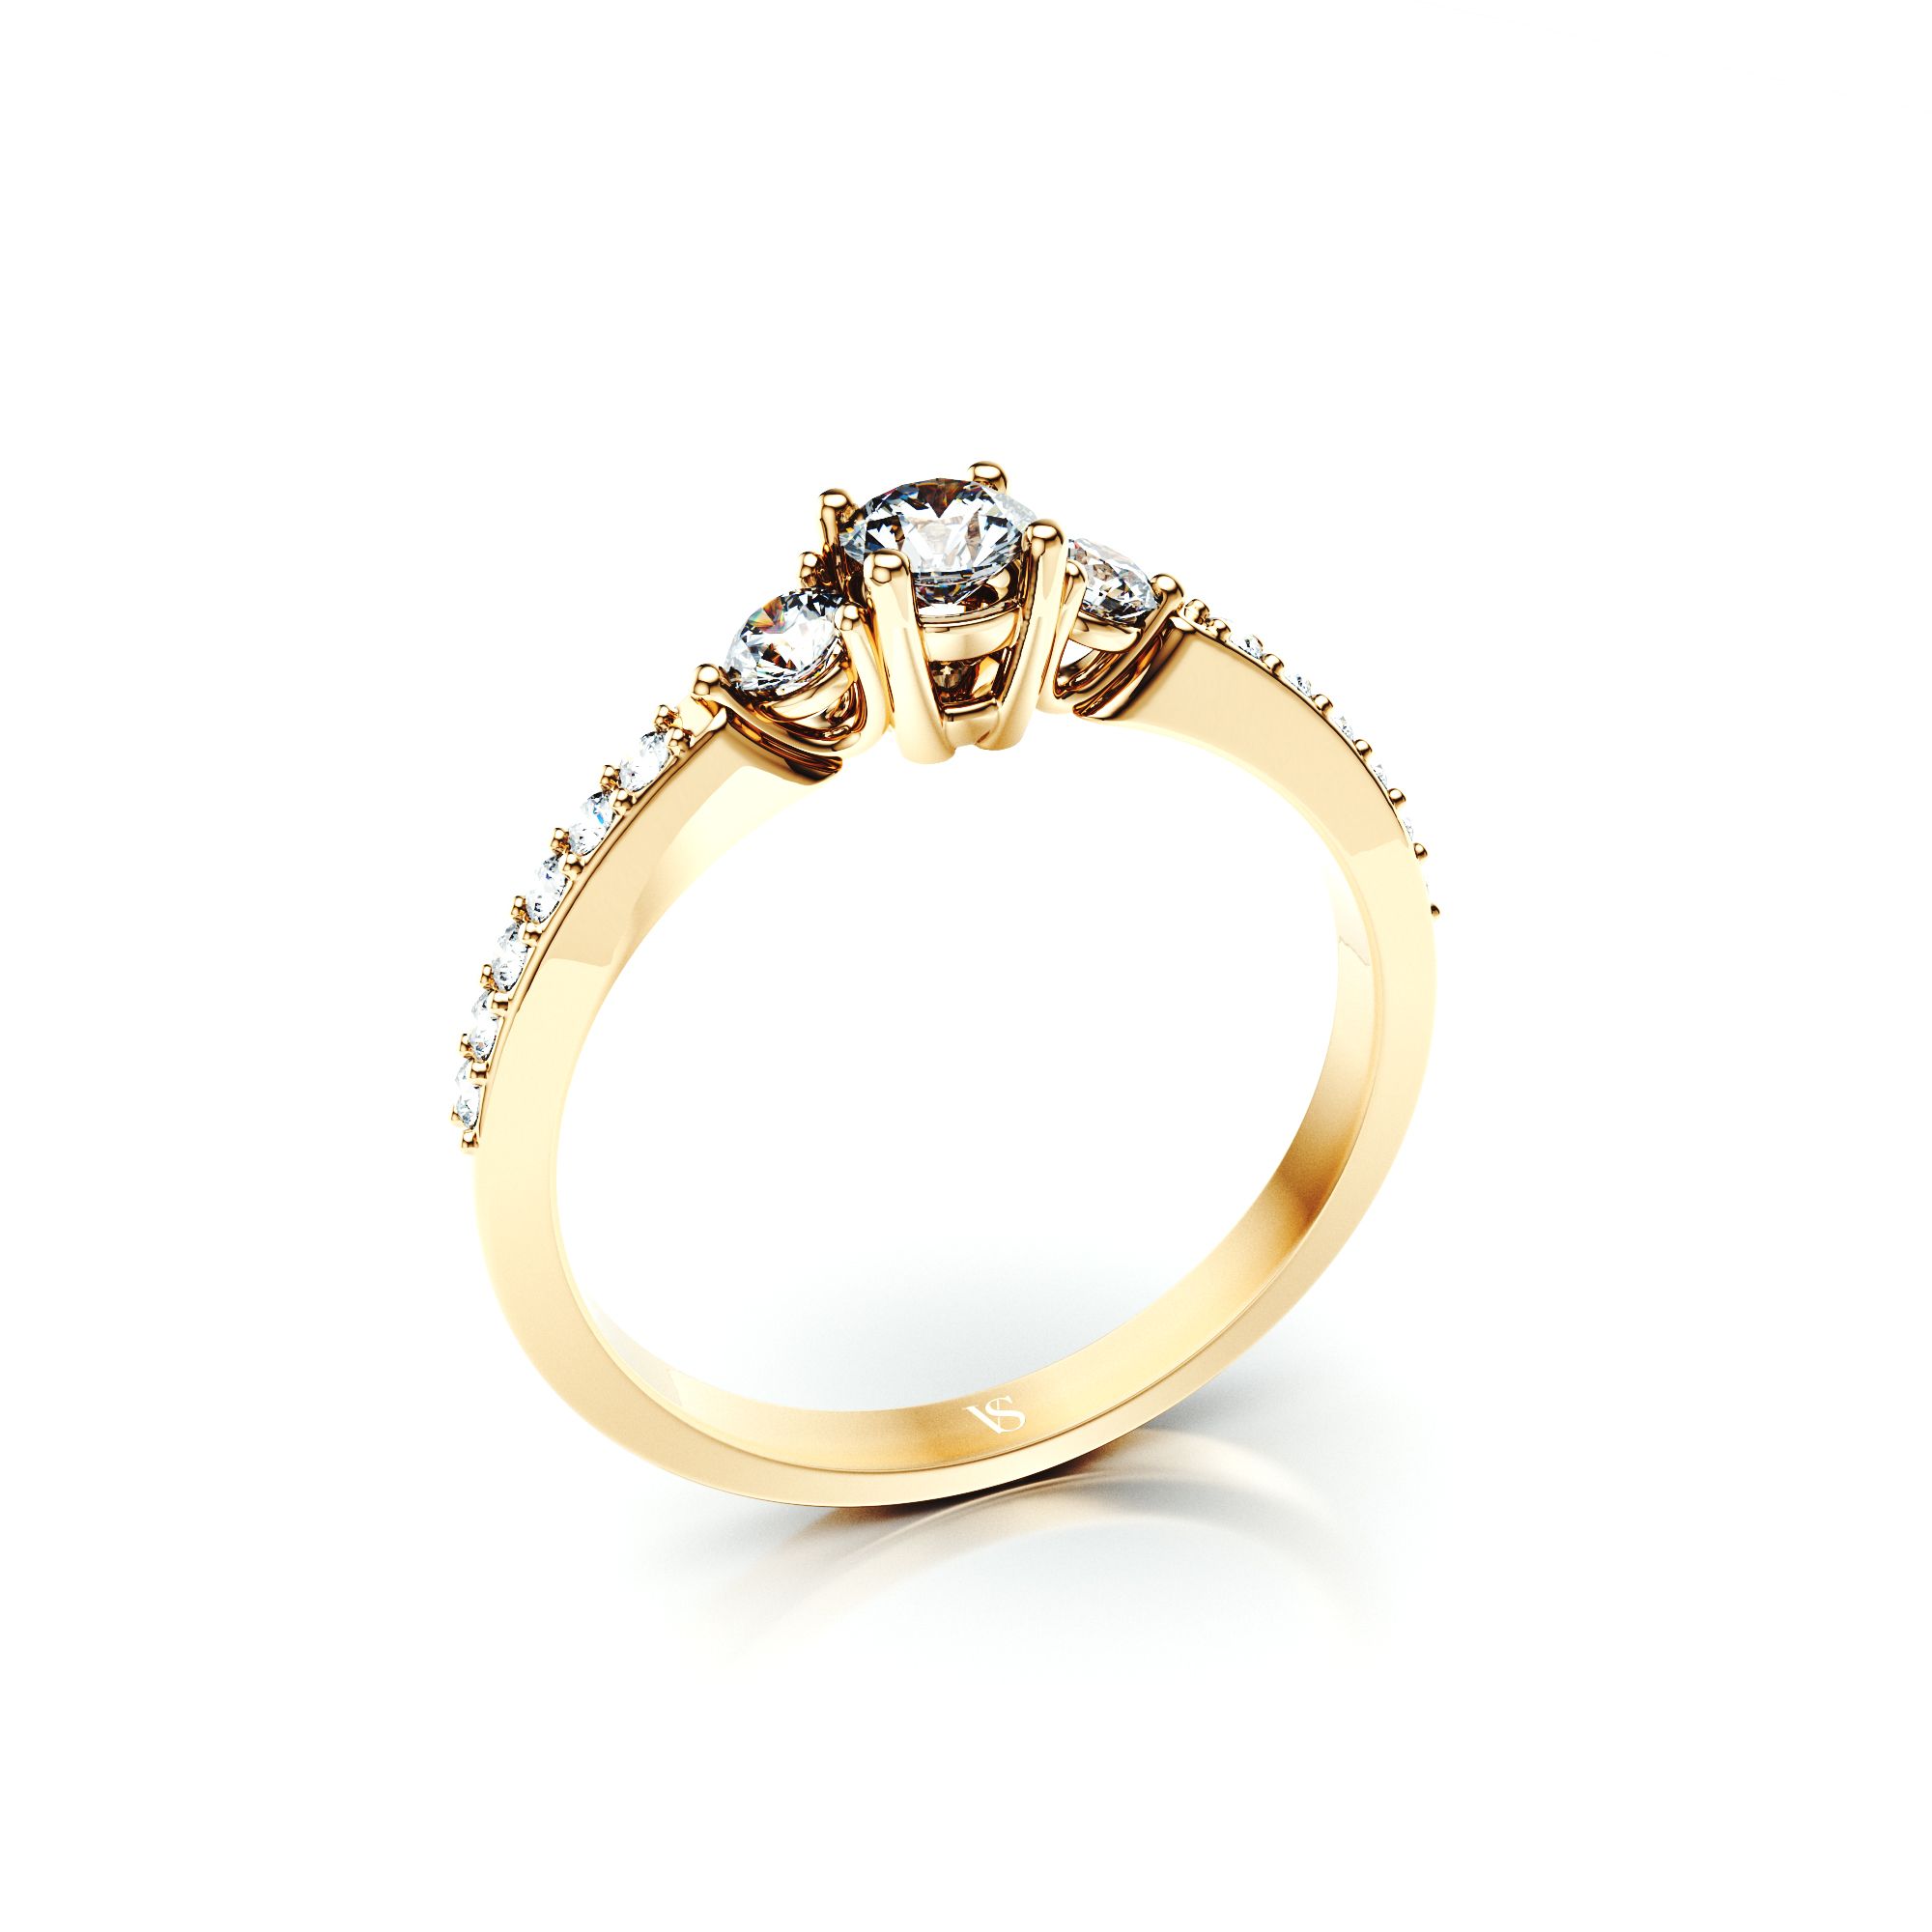 Zásnubní prsten VS019 – žluté zlato